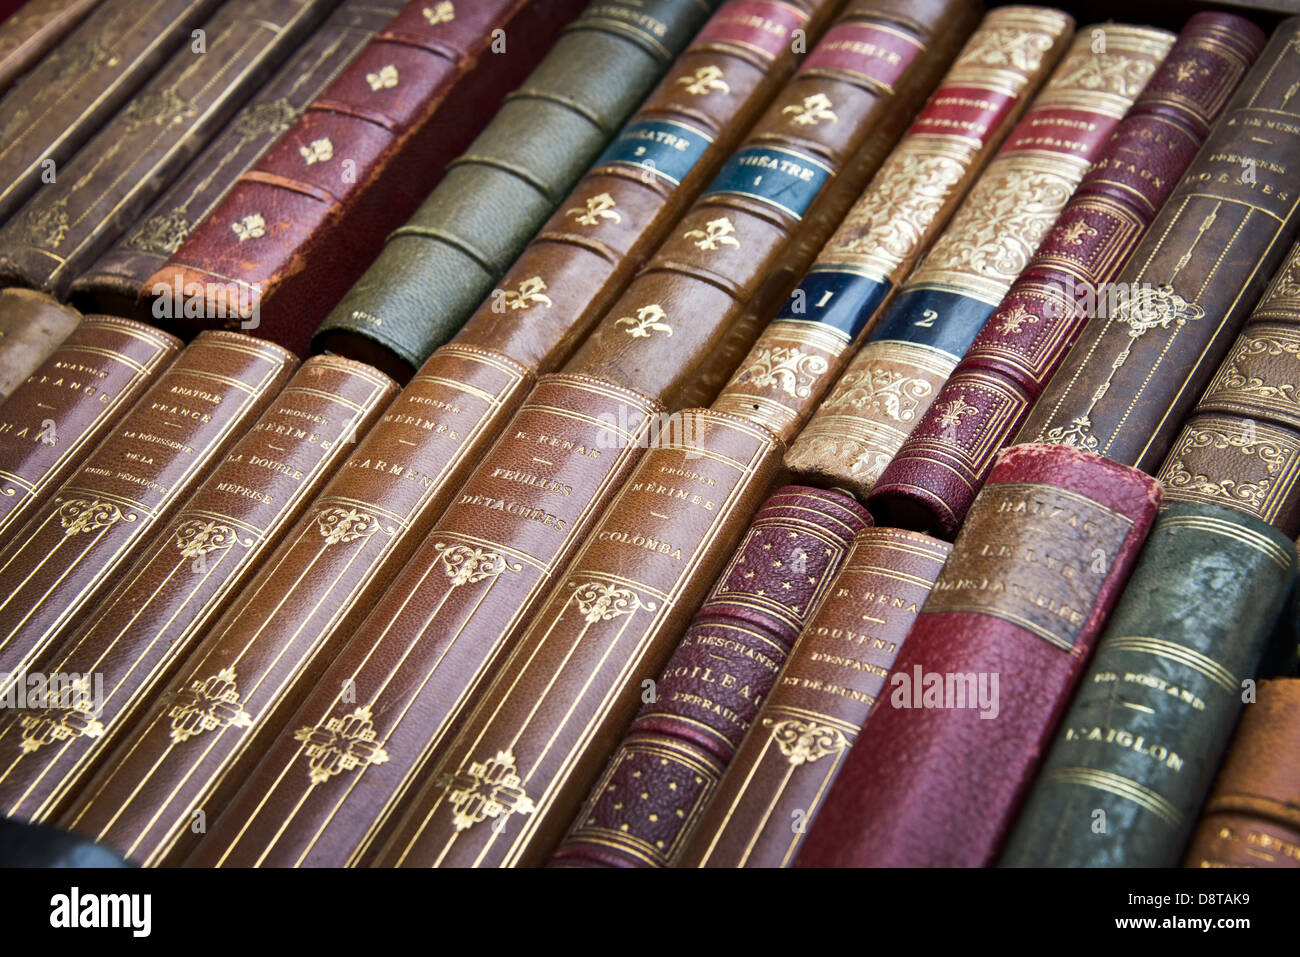 Alte französische Bücher mit Leder Buchumschläge Stockfoto